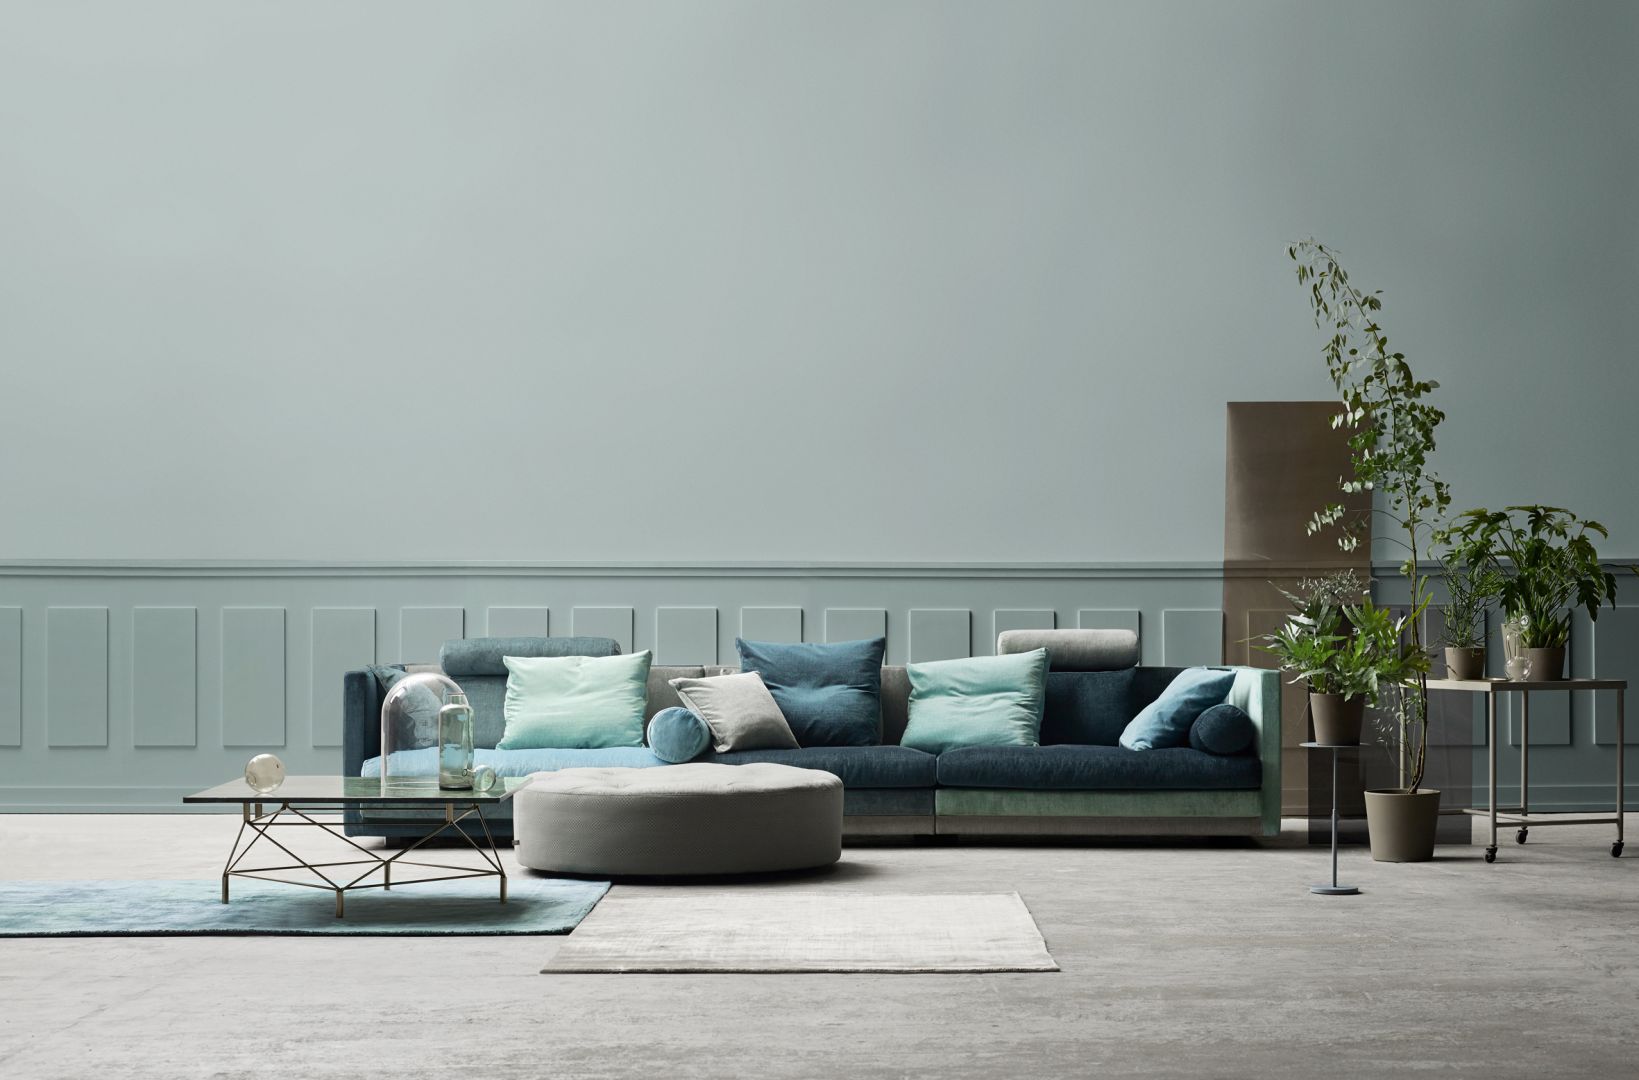 Cocoon sofa ma prawie cztery metry długości, dzięki czemu stanowi doskonałe wyposażenie dużego salonu. Fot. Eillersen